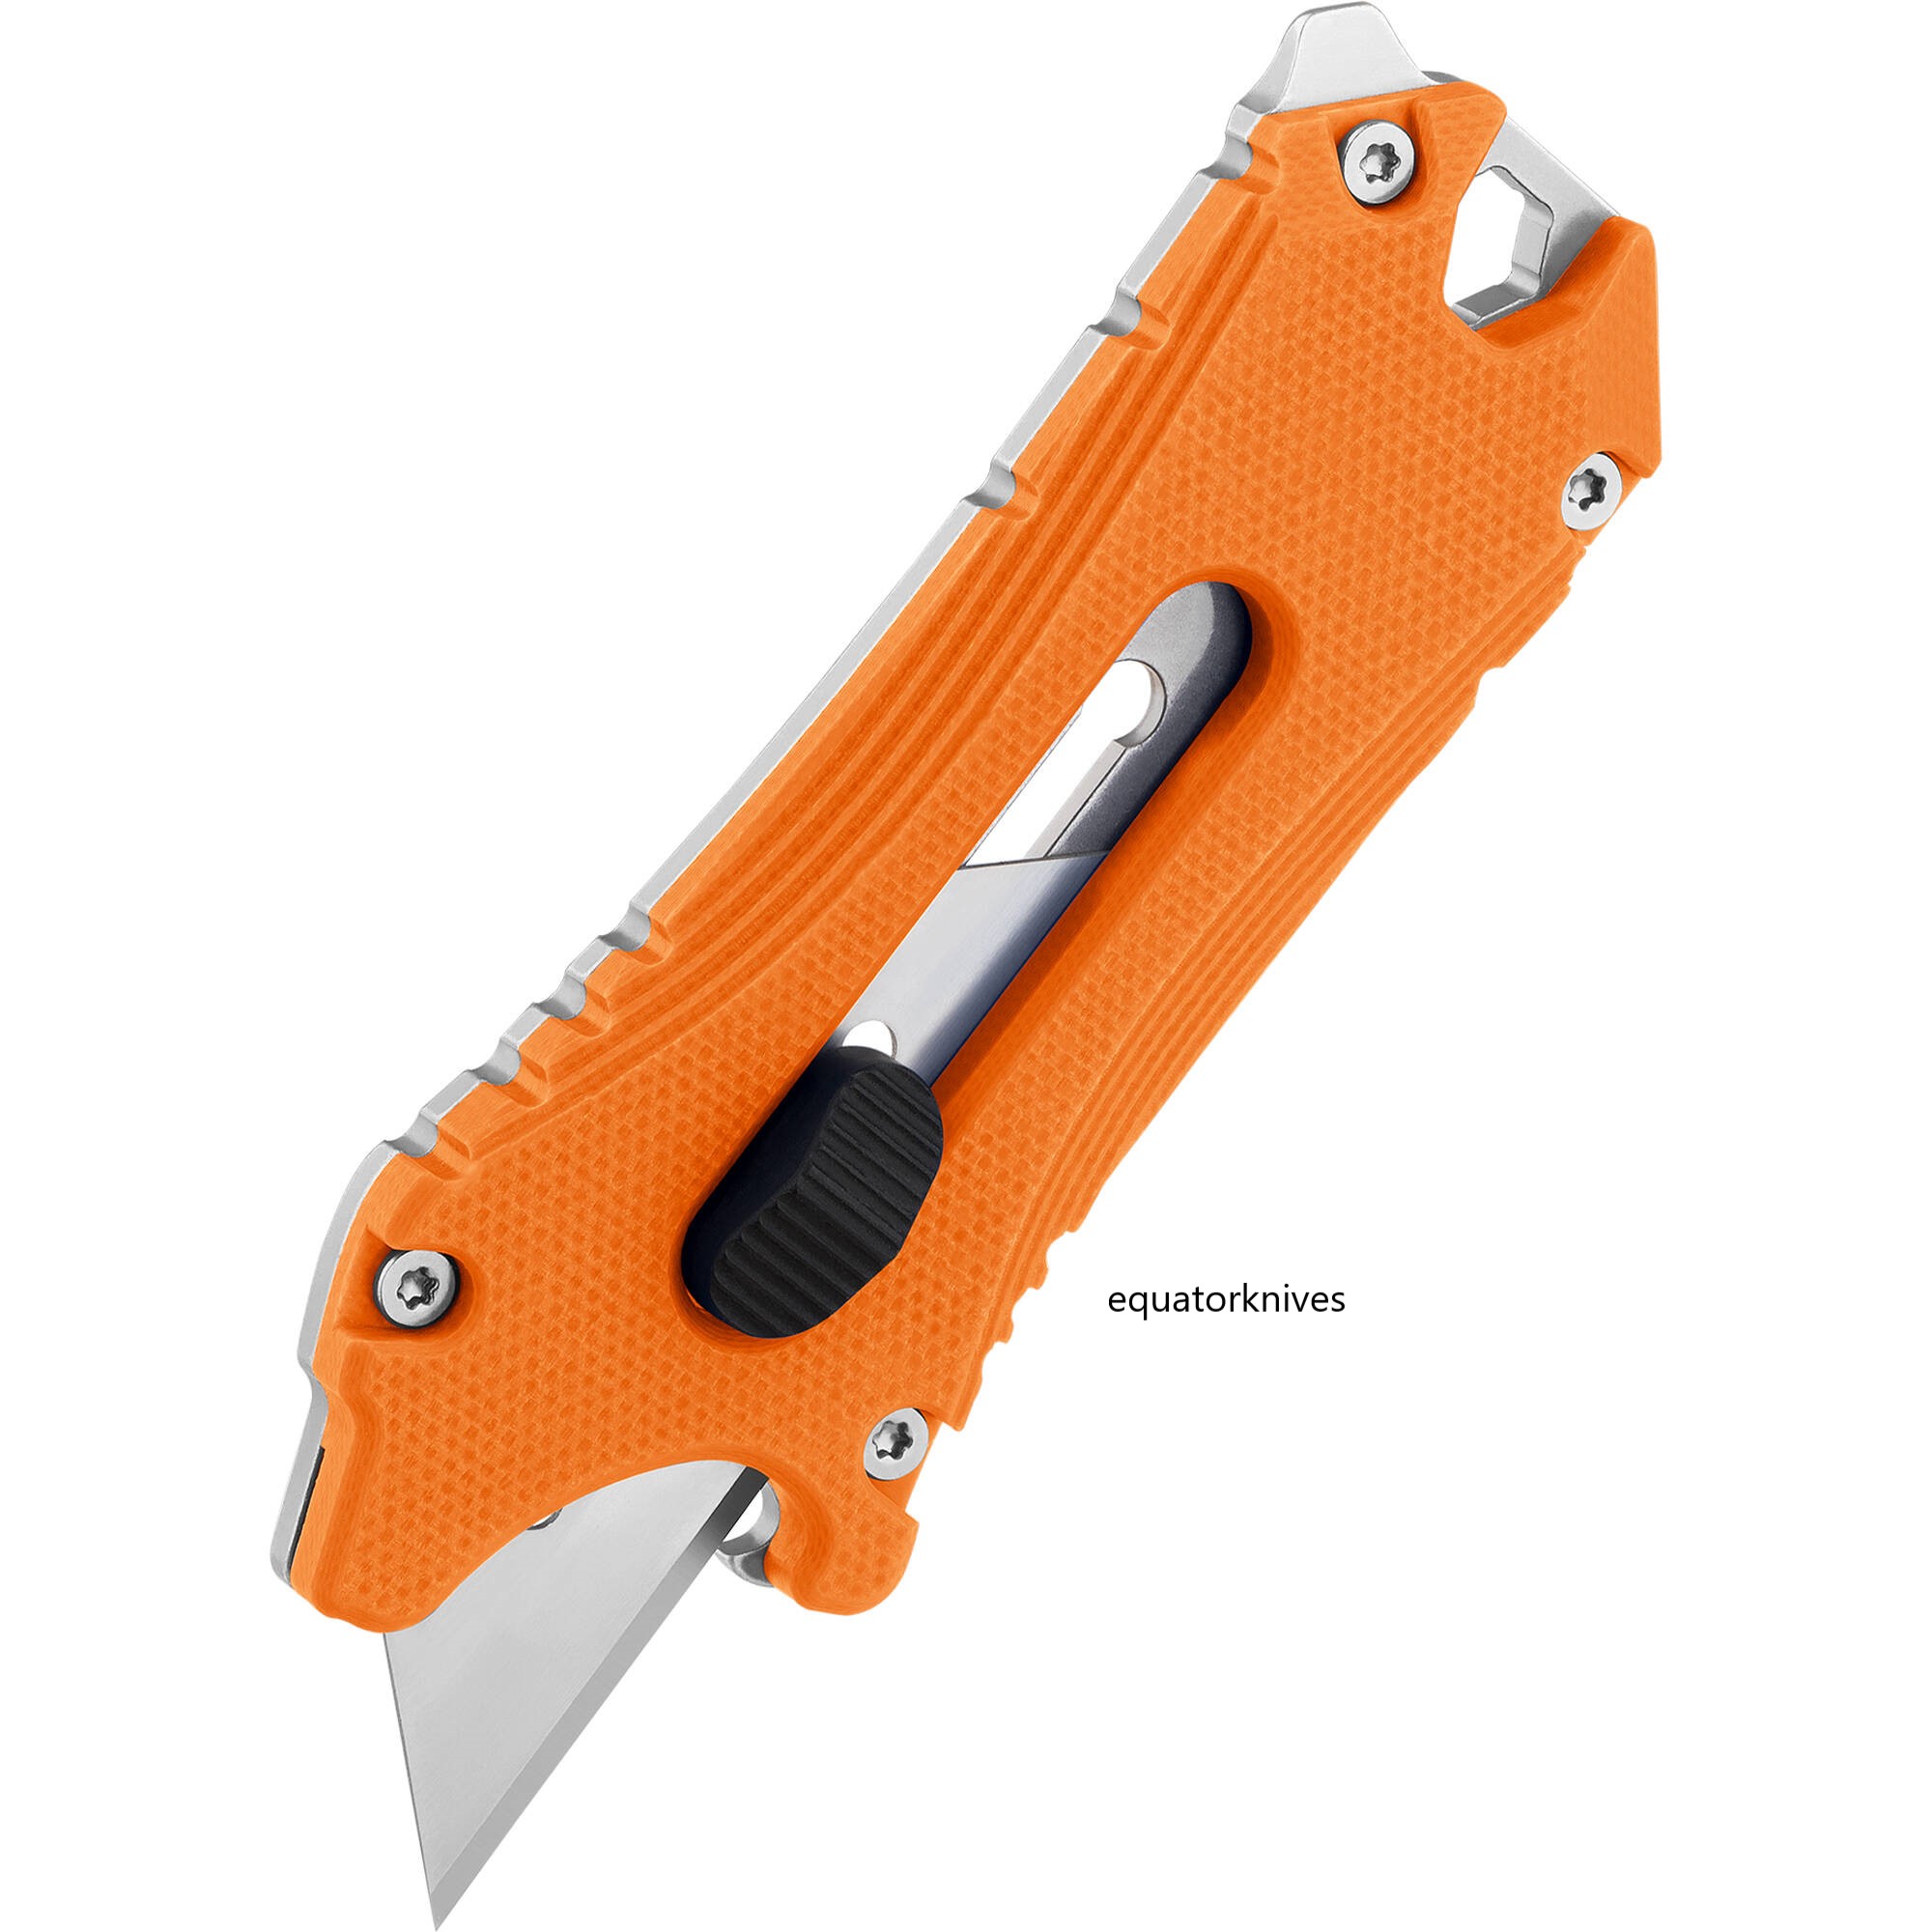 OLTOTACLEOG Otacle utility knife Orange